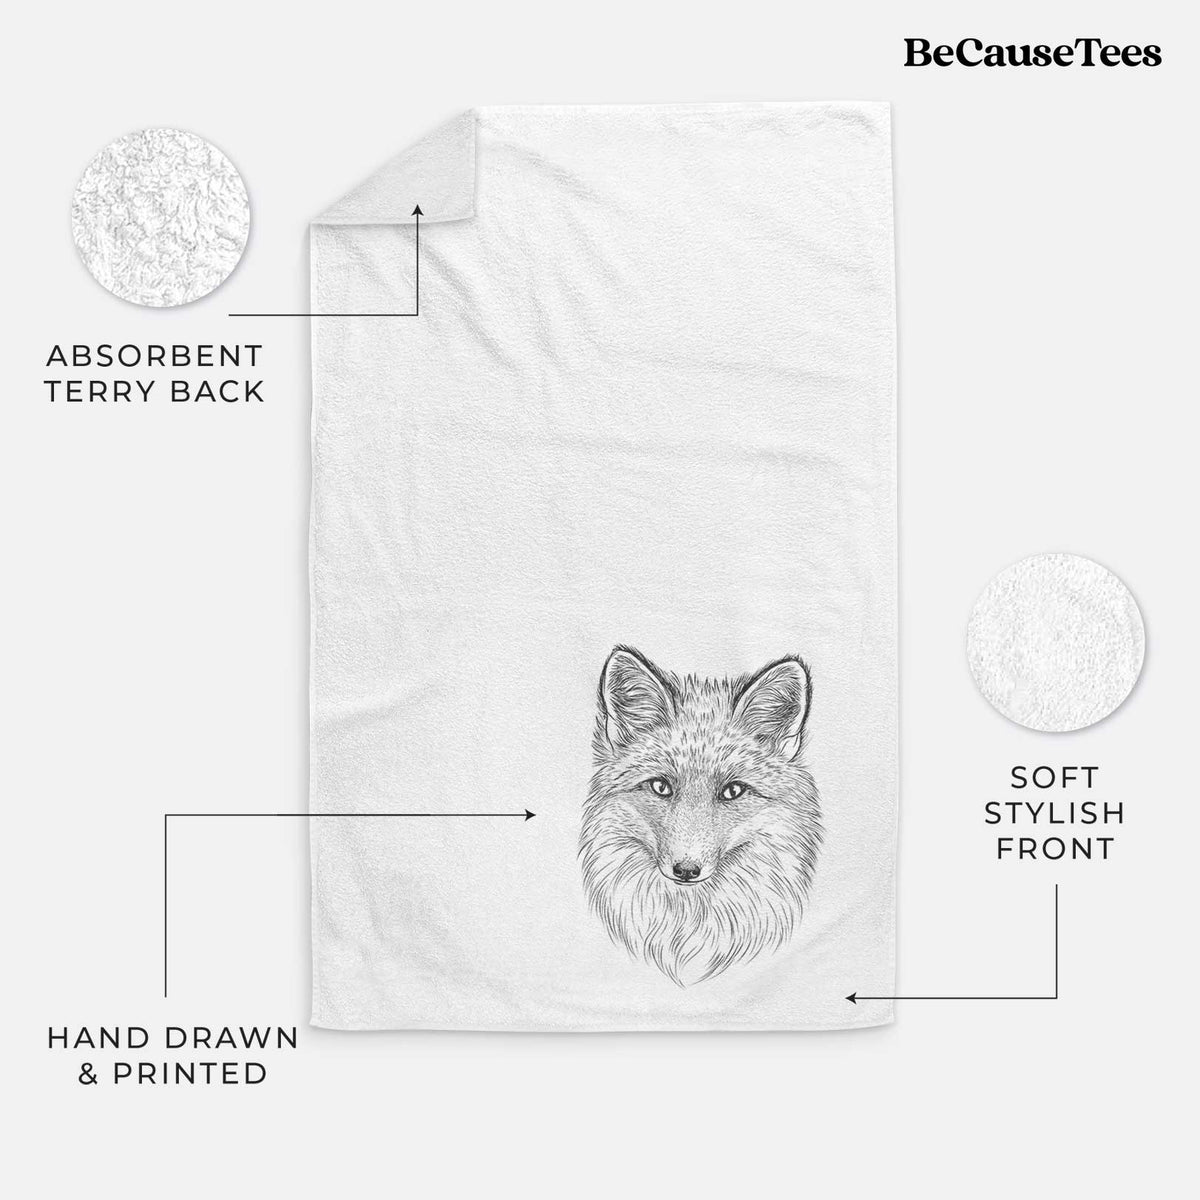 Red Fox - Vulpes vulpes Hand Towel